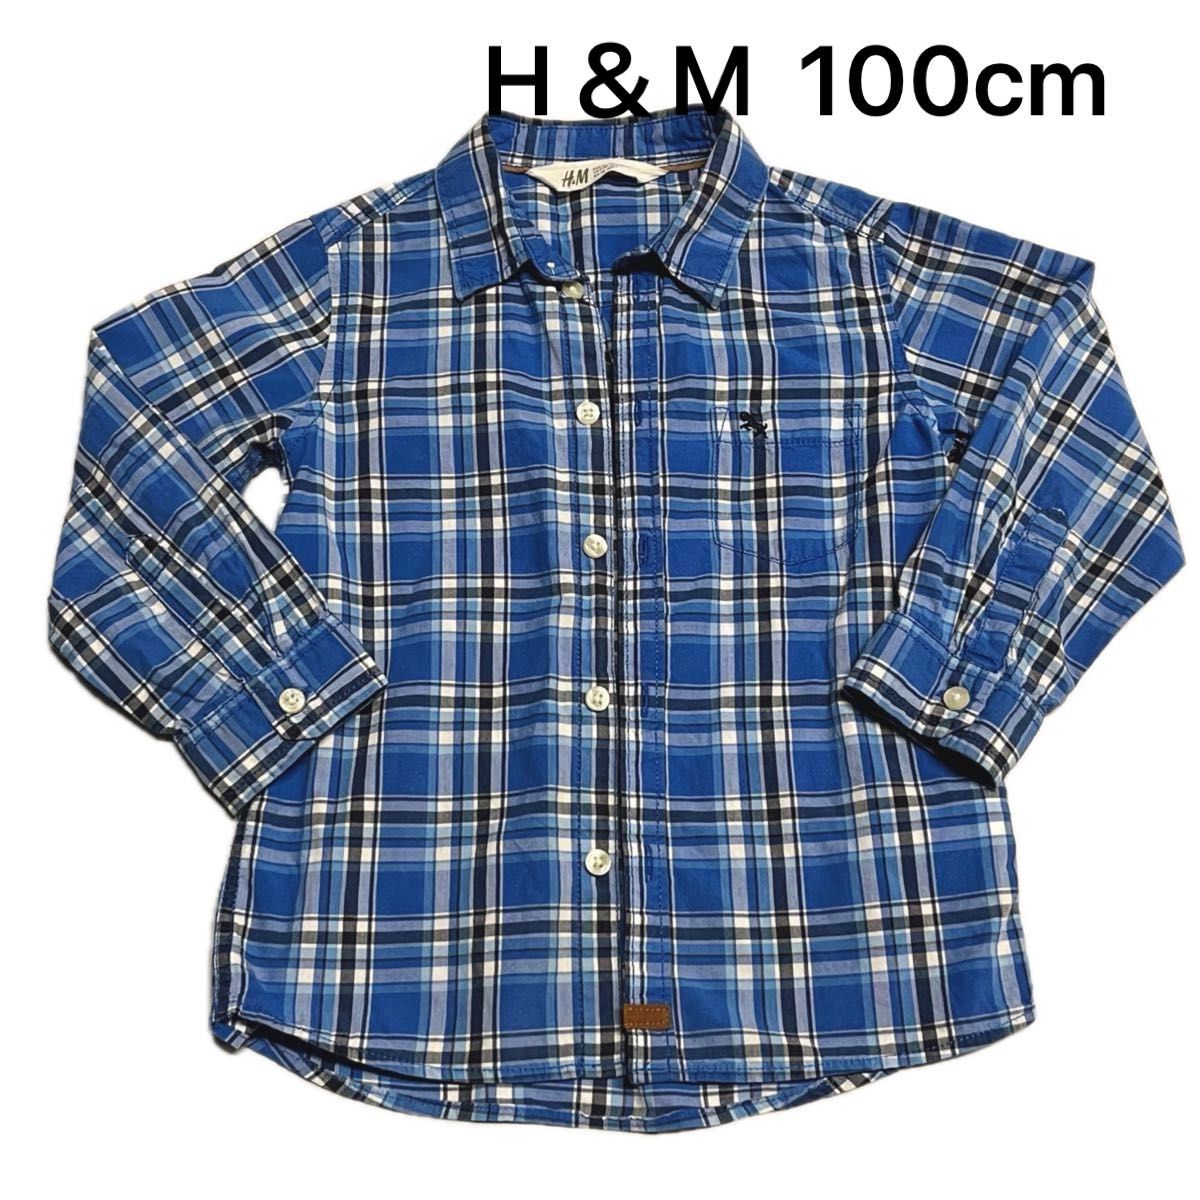 100cm【中古】H&M エイチアンドエム チェック柄シャツ 青色 男の子 2-3Year 長袖シャツ ボタンシャツ